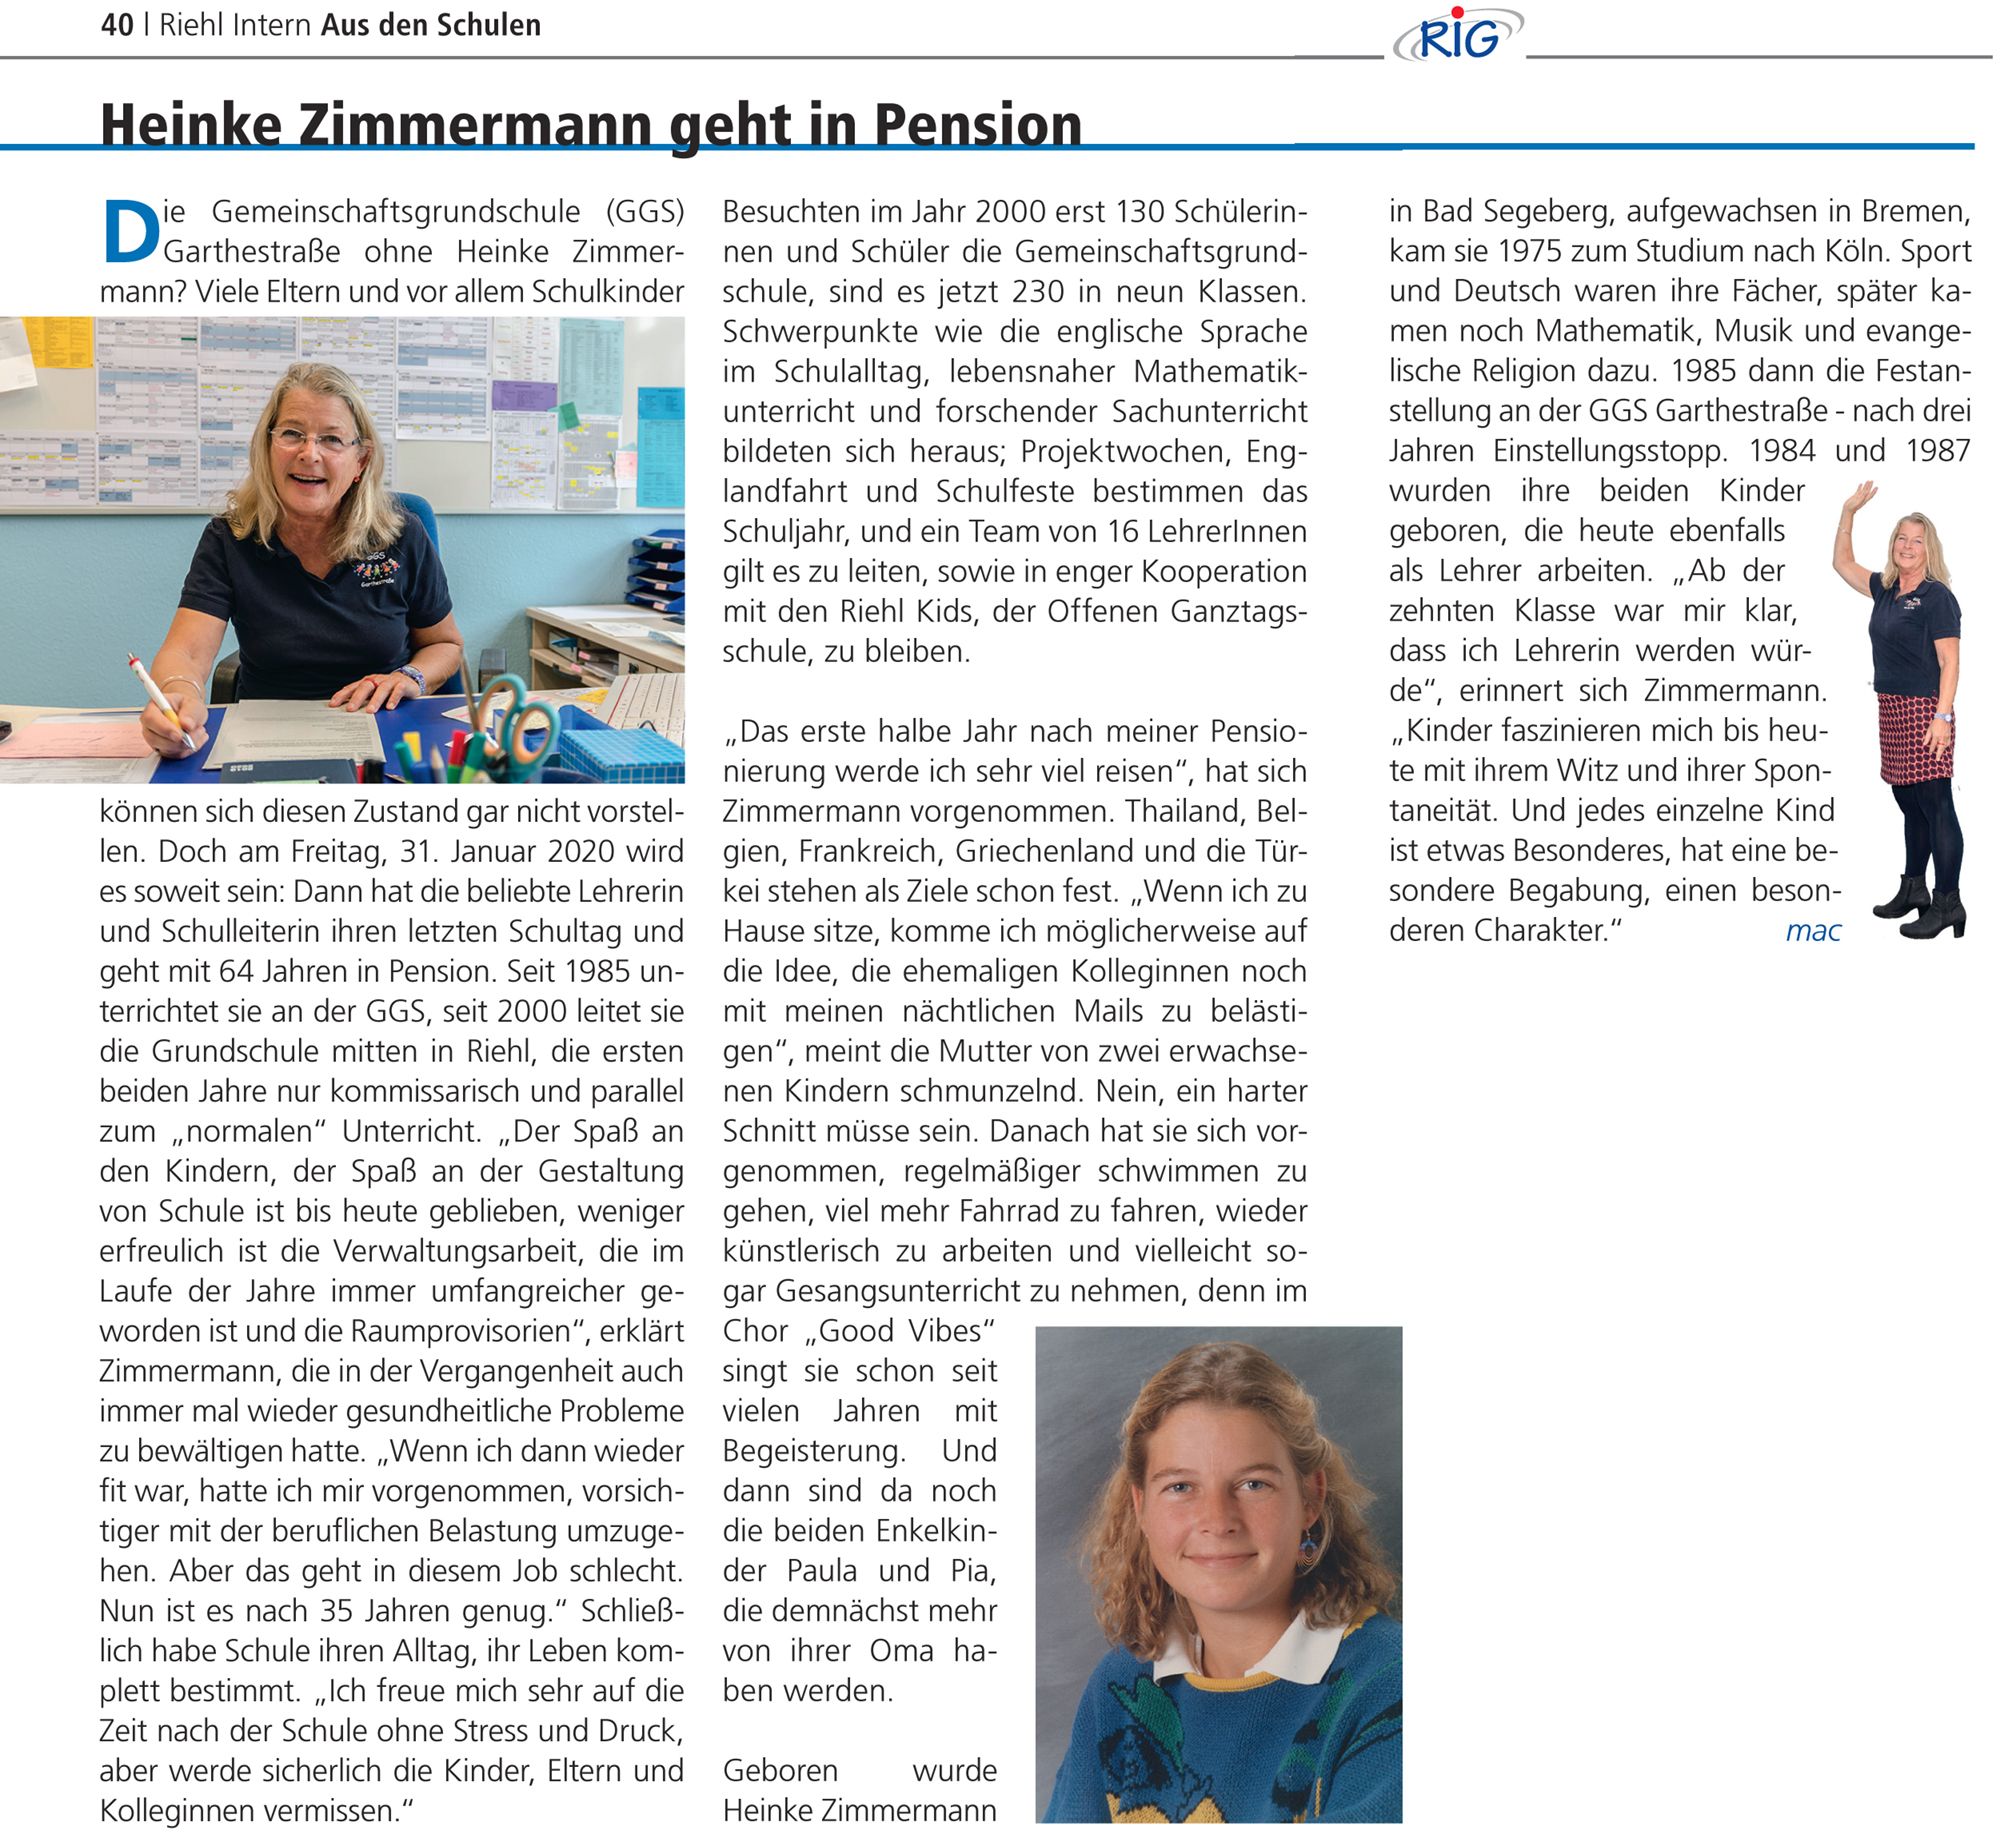 2019-11 Heinke Zimmermann in Pension